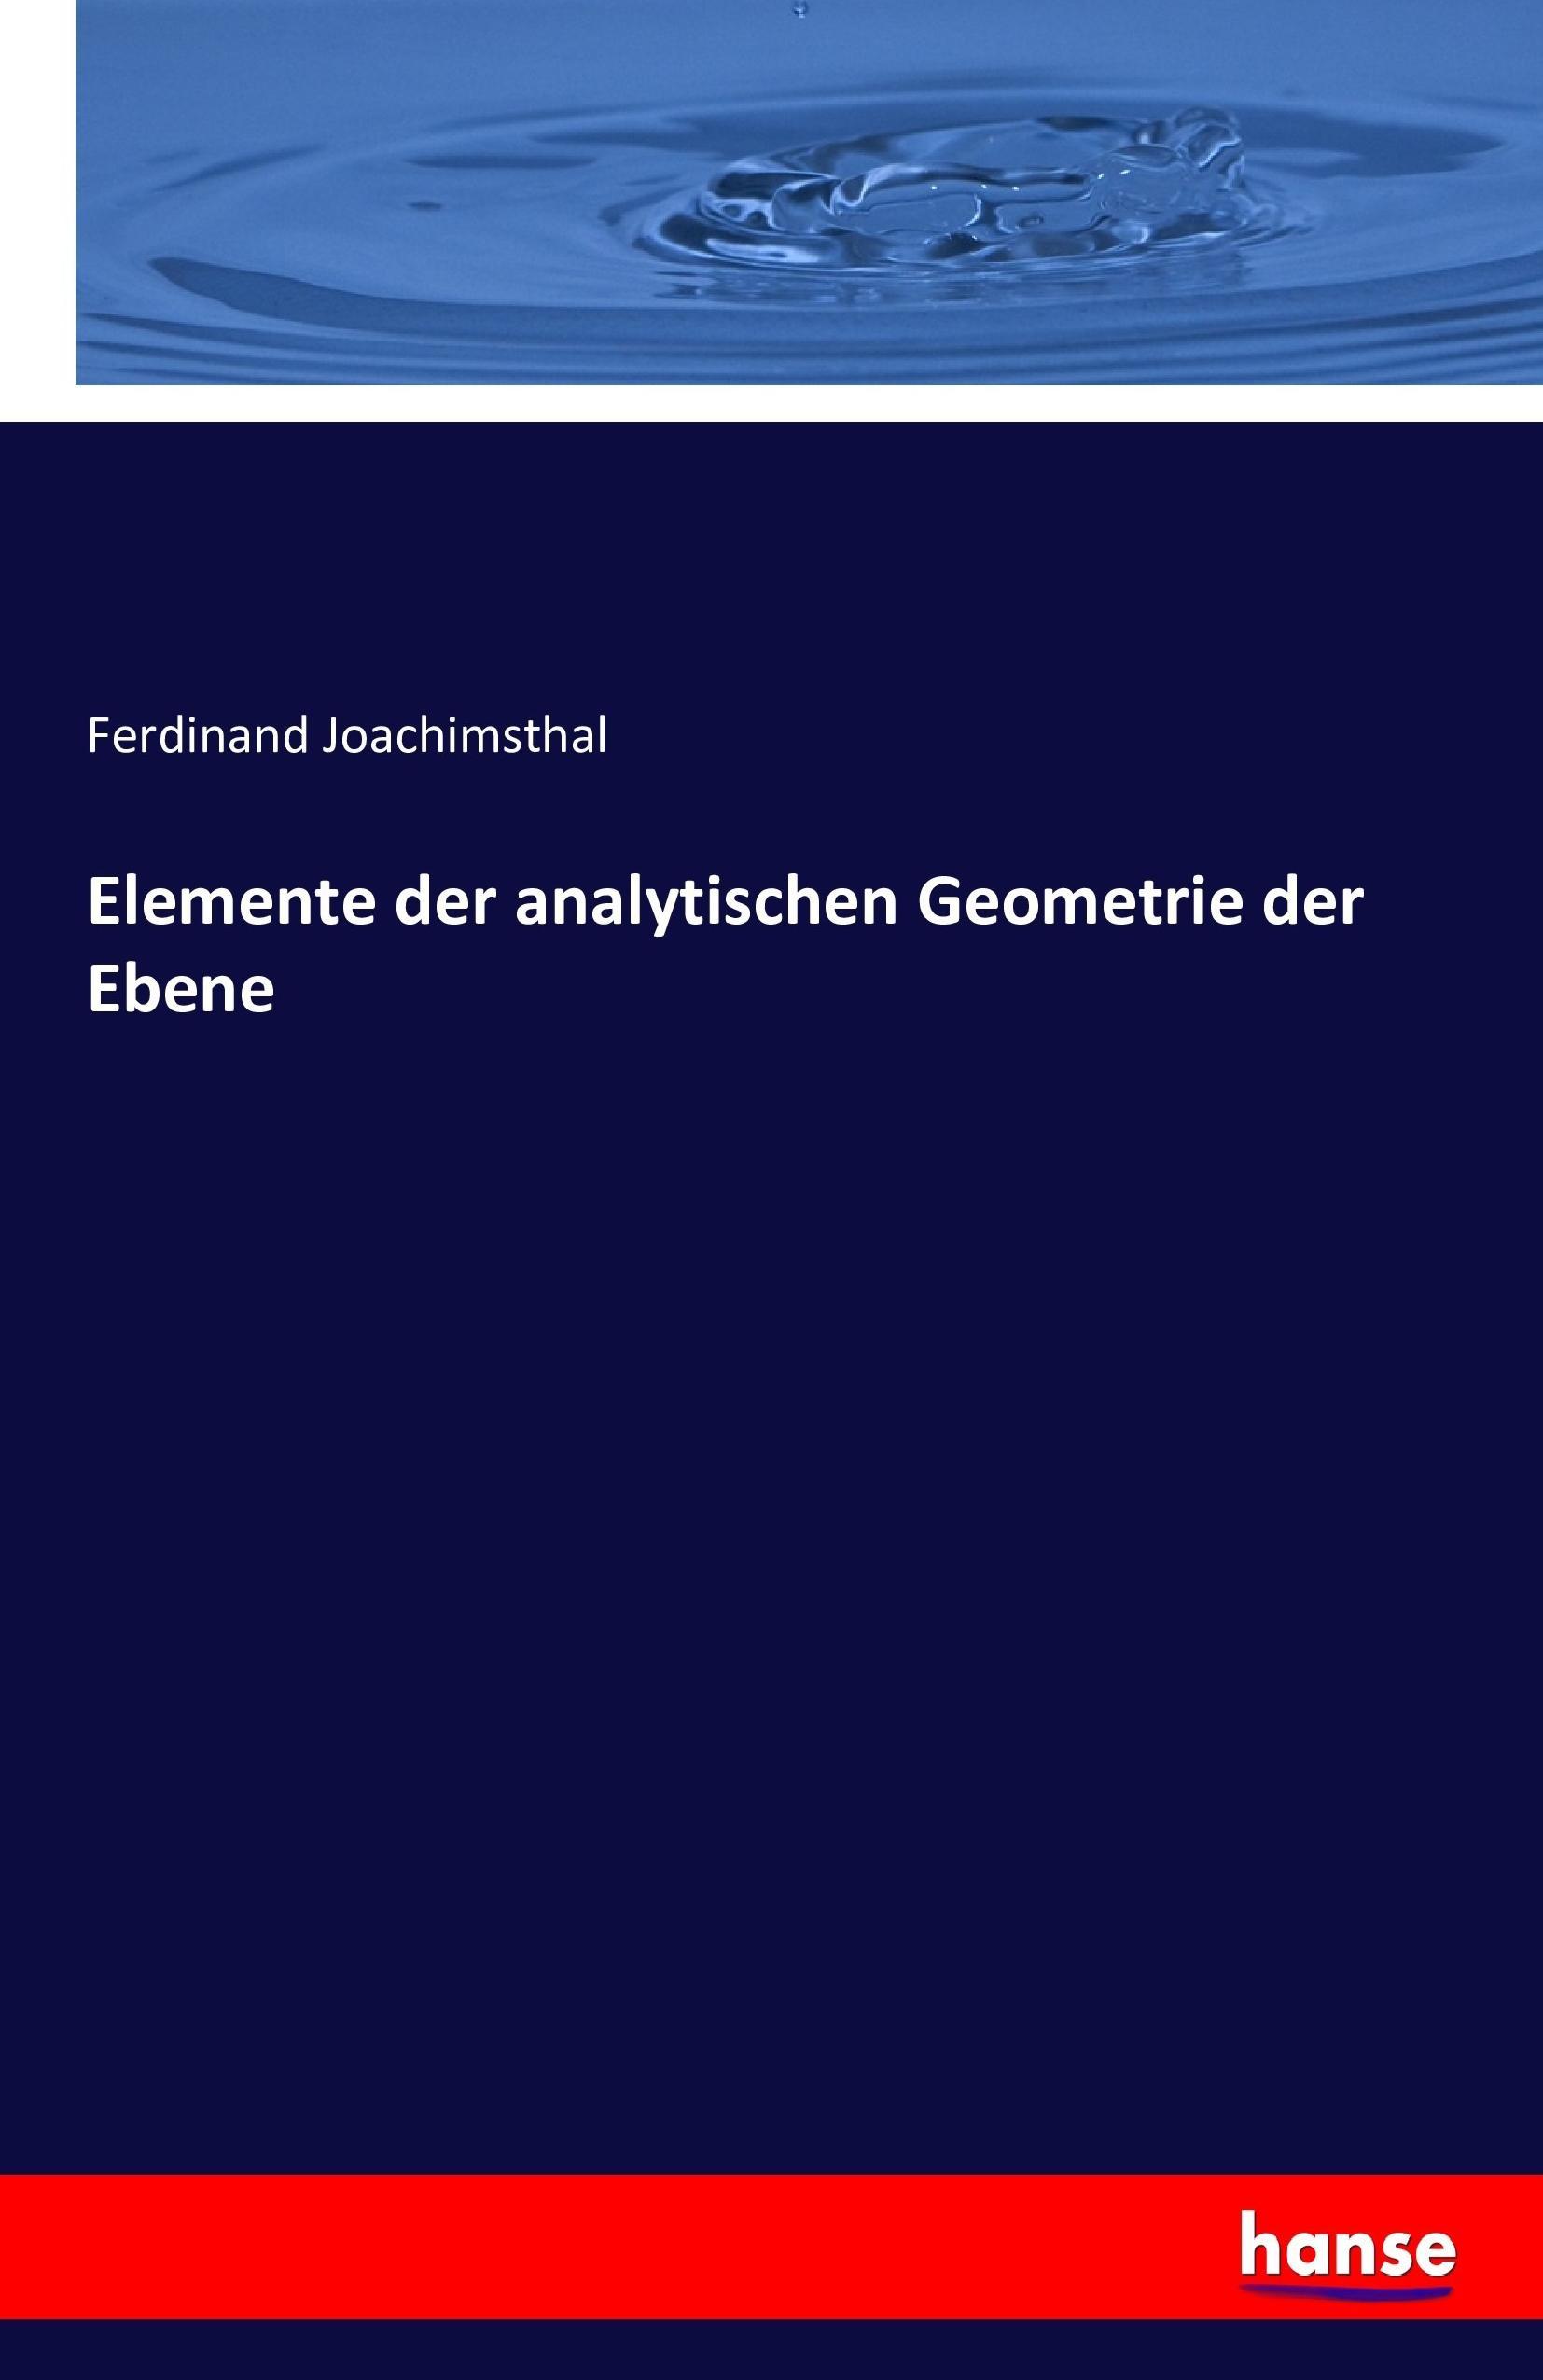 Elemente der analytischen Geometrie der Ebene - Joachimsthal, Ferdinand